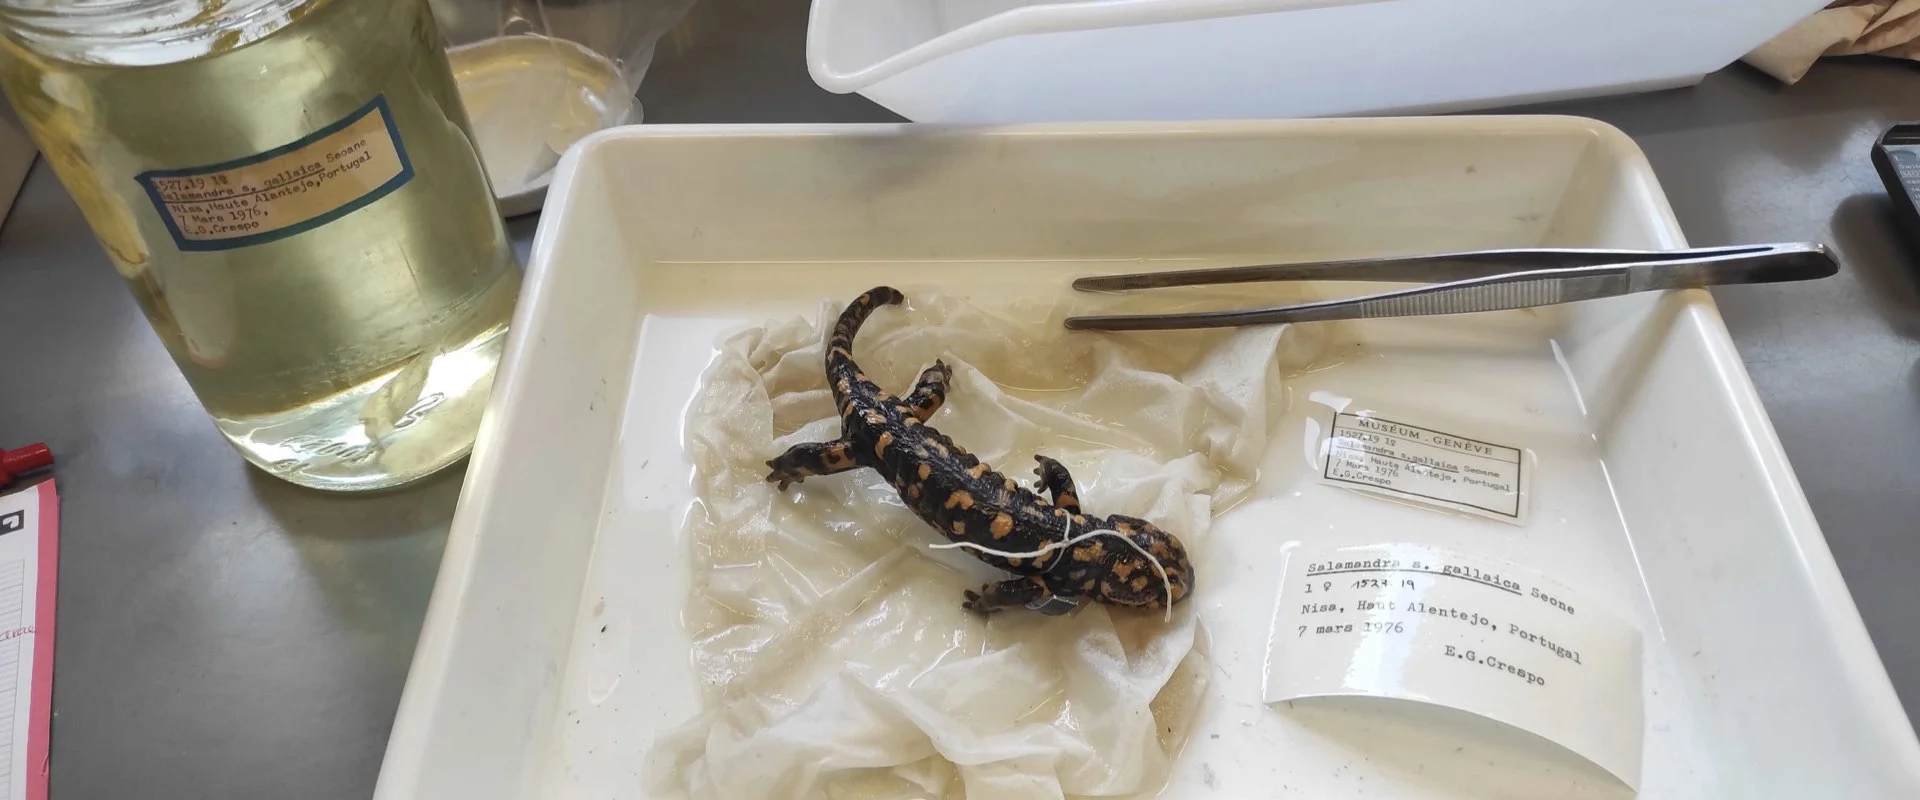 Un spécimen de salamandre préservé dans un plateau